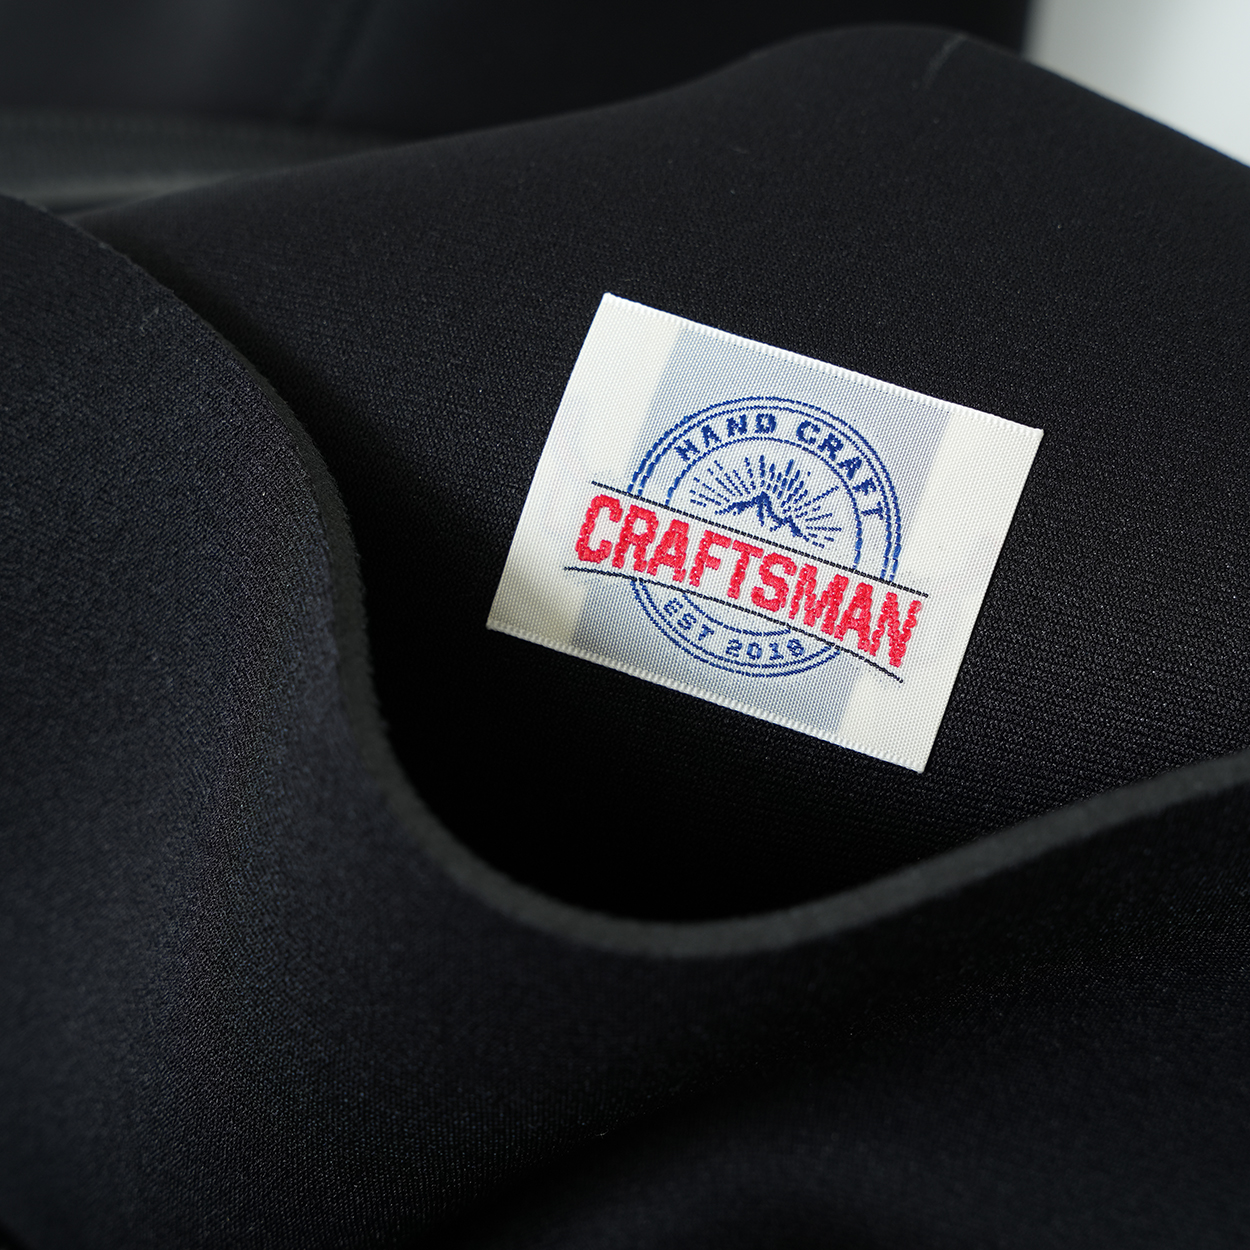 CRAFTSMAN WETSUITS 3mm ウエットスーツ フルスーツ ジャージ チェストジップ JERSEY MEN'S LADYS UNISEX FULL SUITS 3ミリ サーフィン 日本製 ダイビング